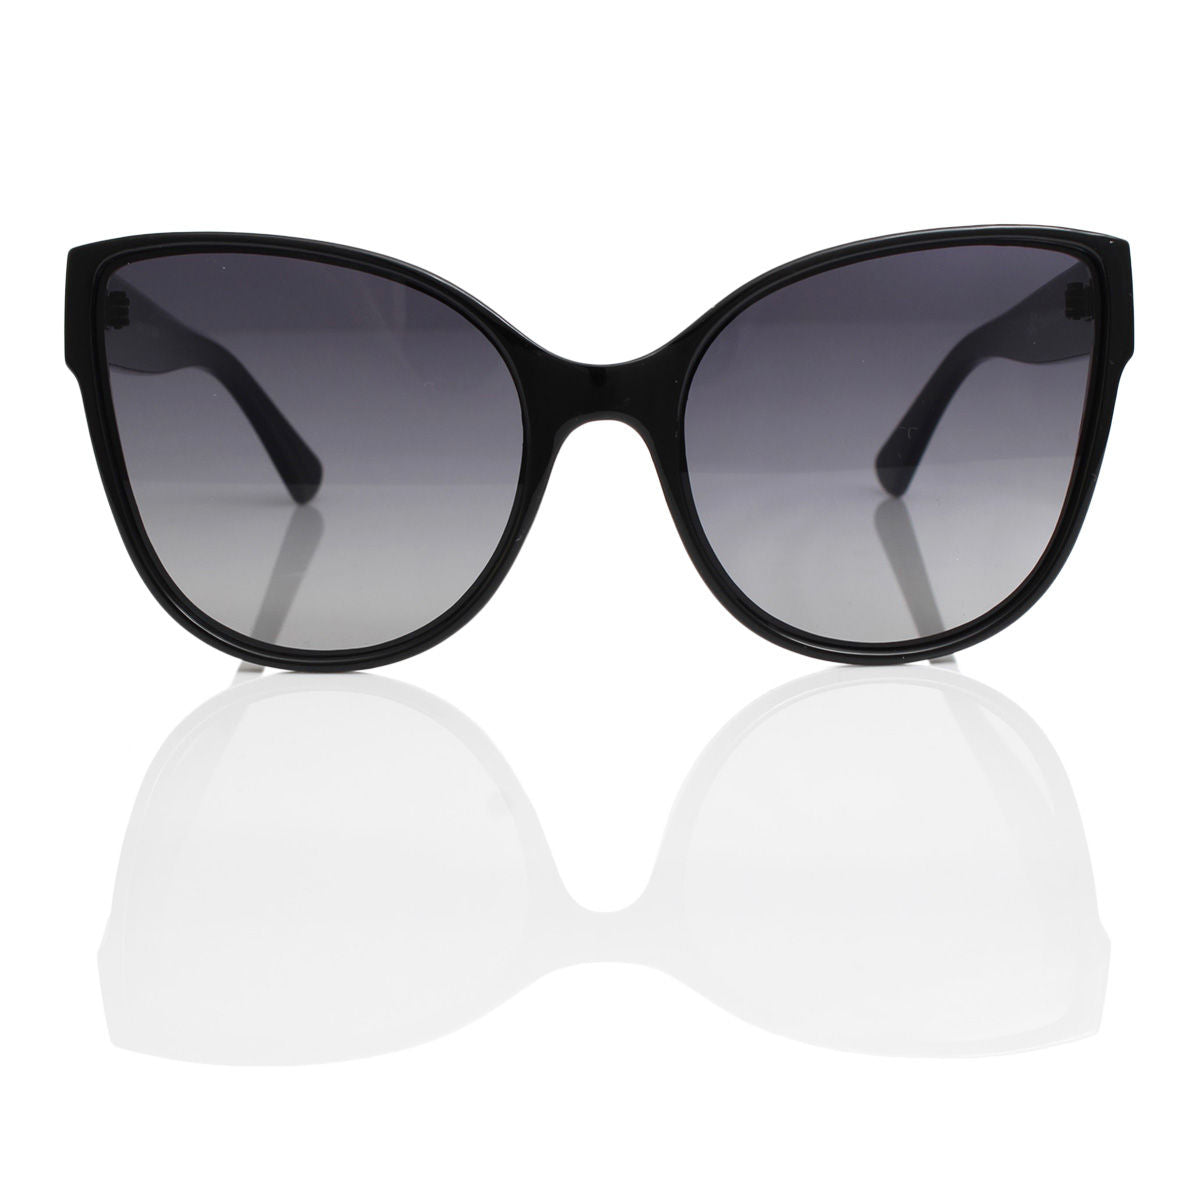 Sunglasses Cat Eye Dimensional Black for Women